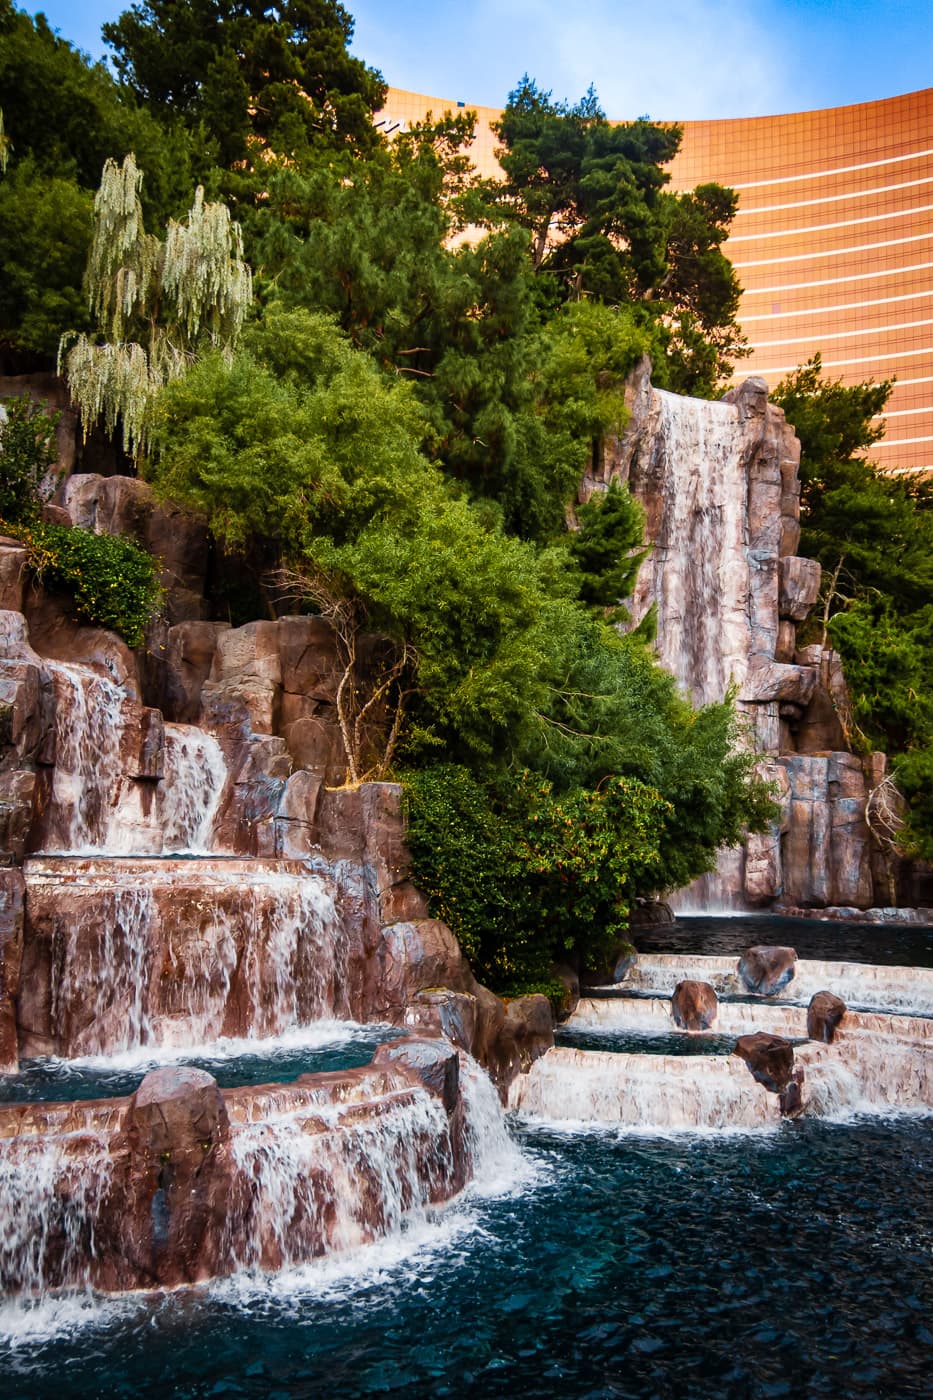 Waterfalls at the Wynn, Las Vegas.